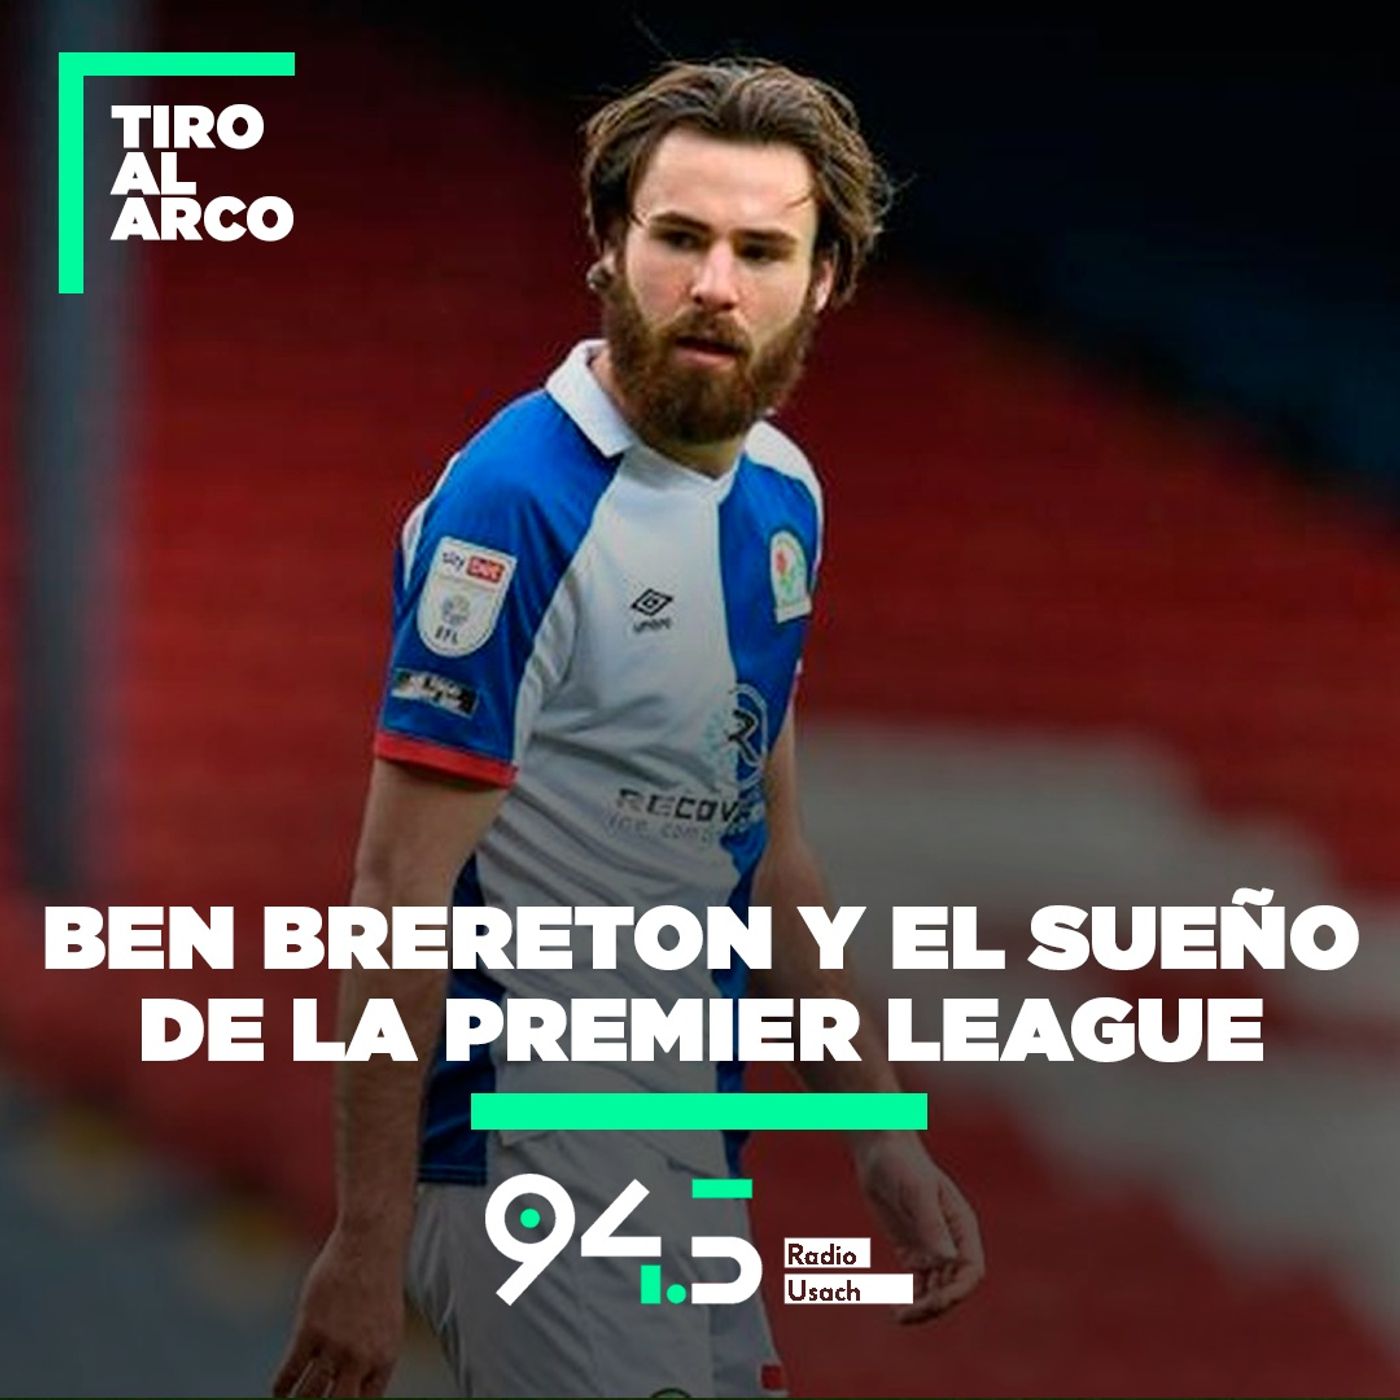 Ben Brereton y el sueño de la Premier League